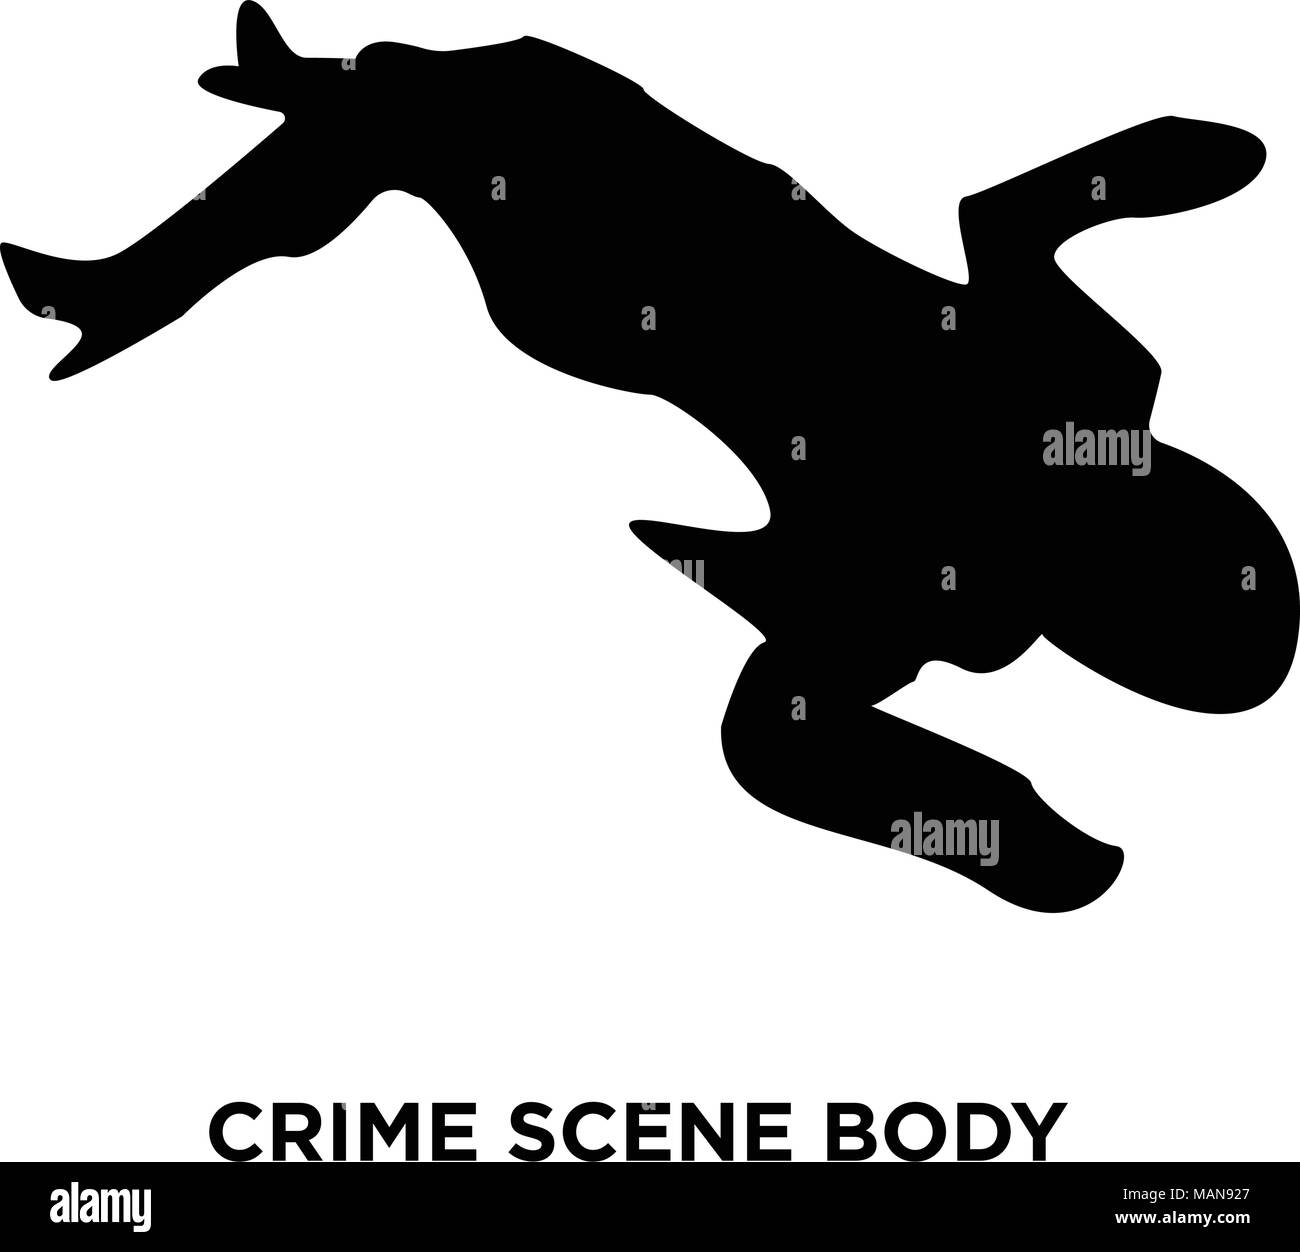 crime scene body silhouette on white background, vector illustration Stock Vector